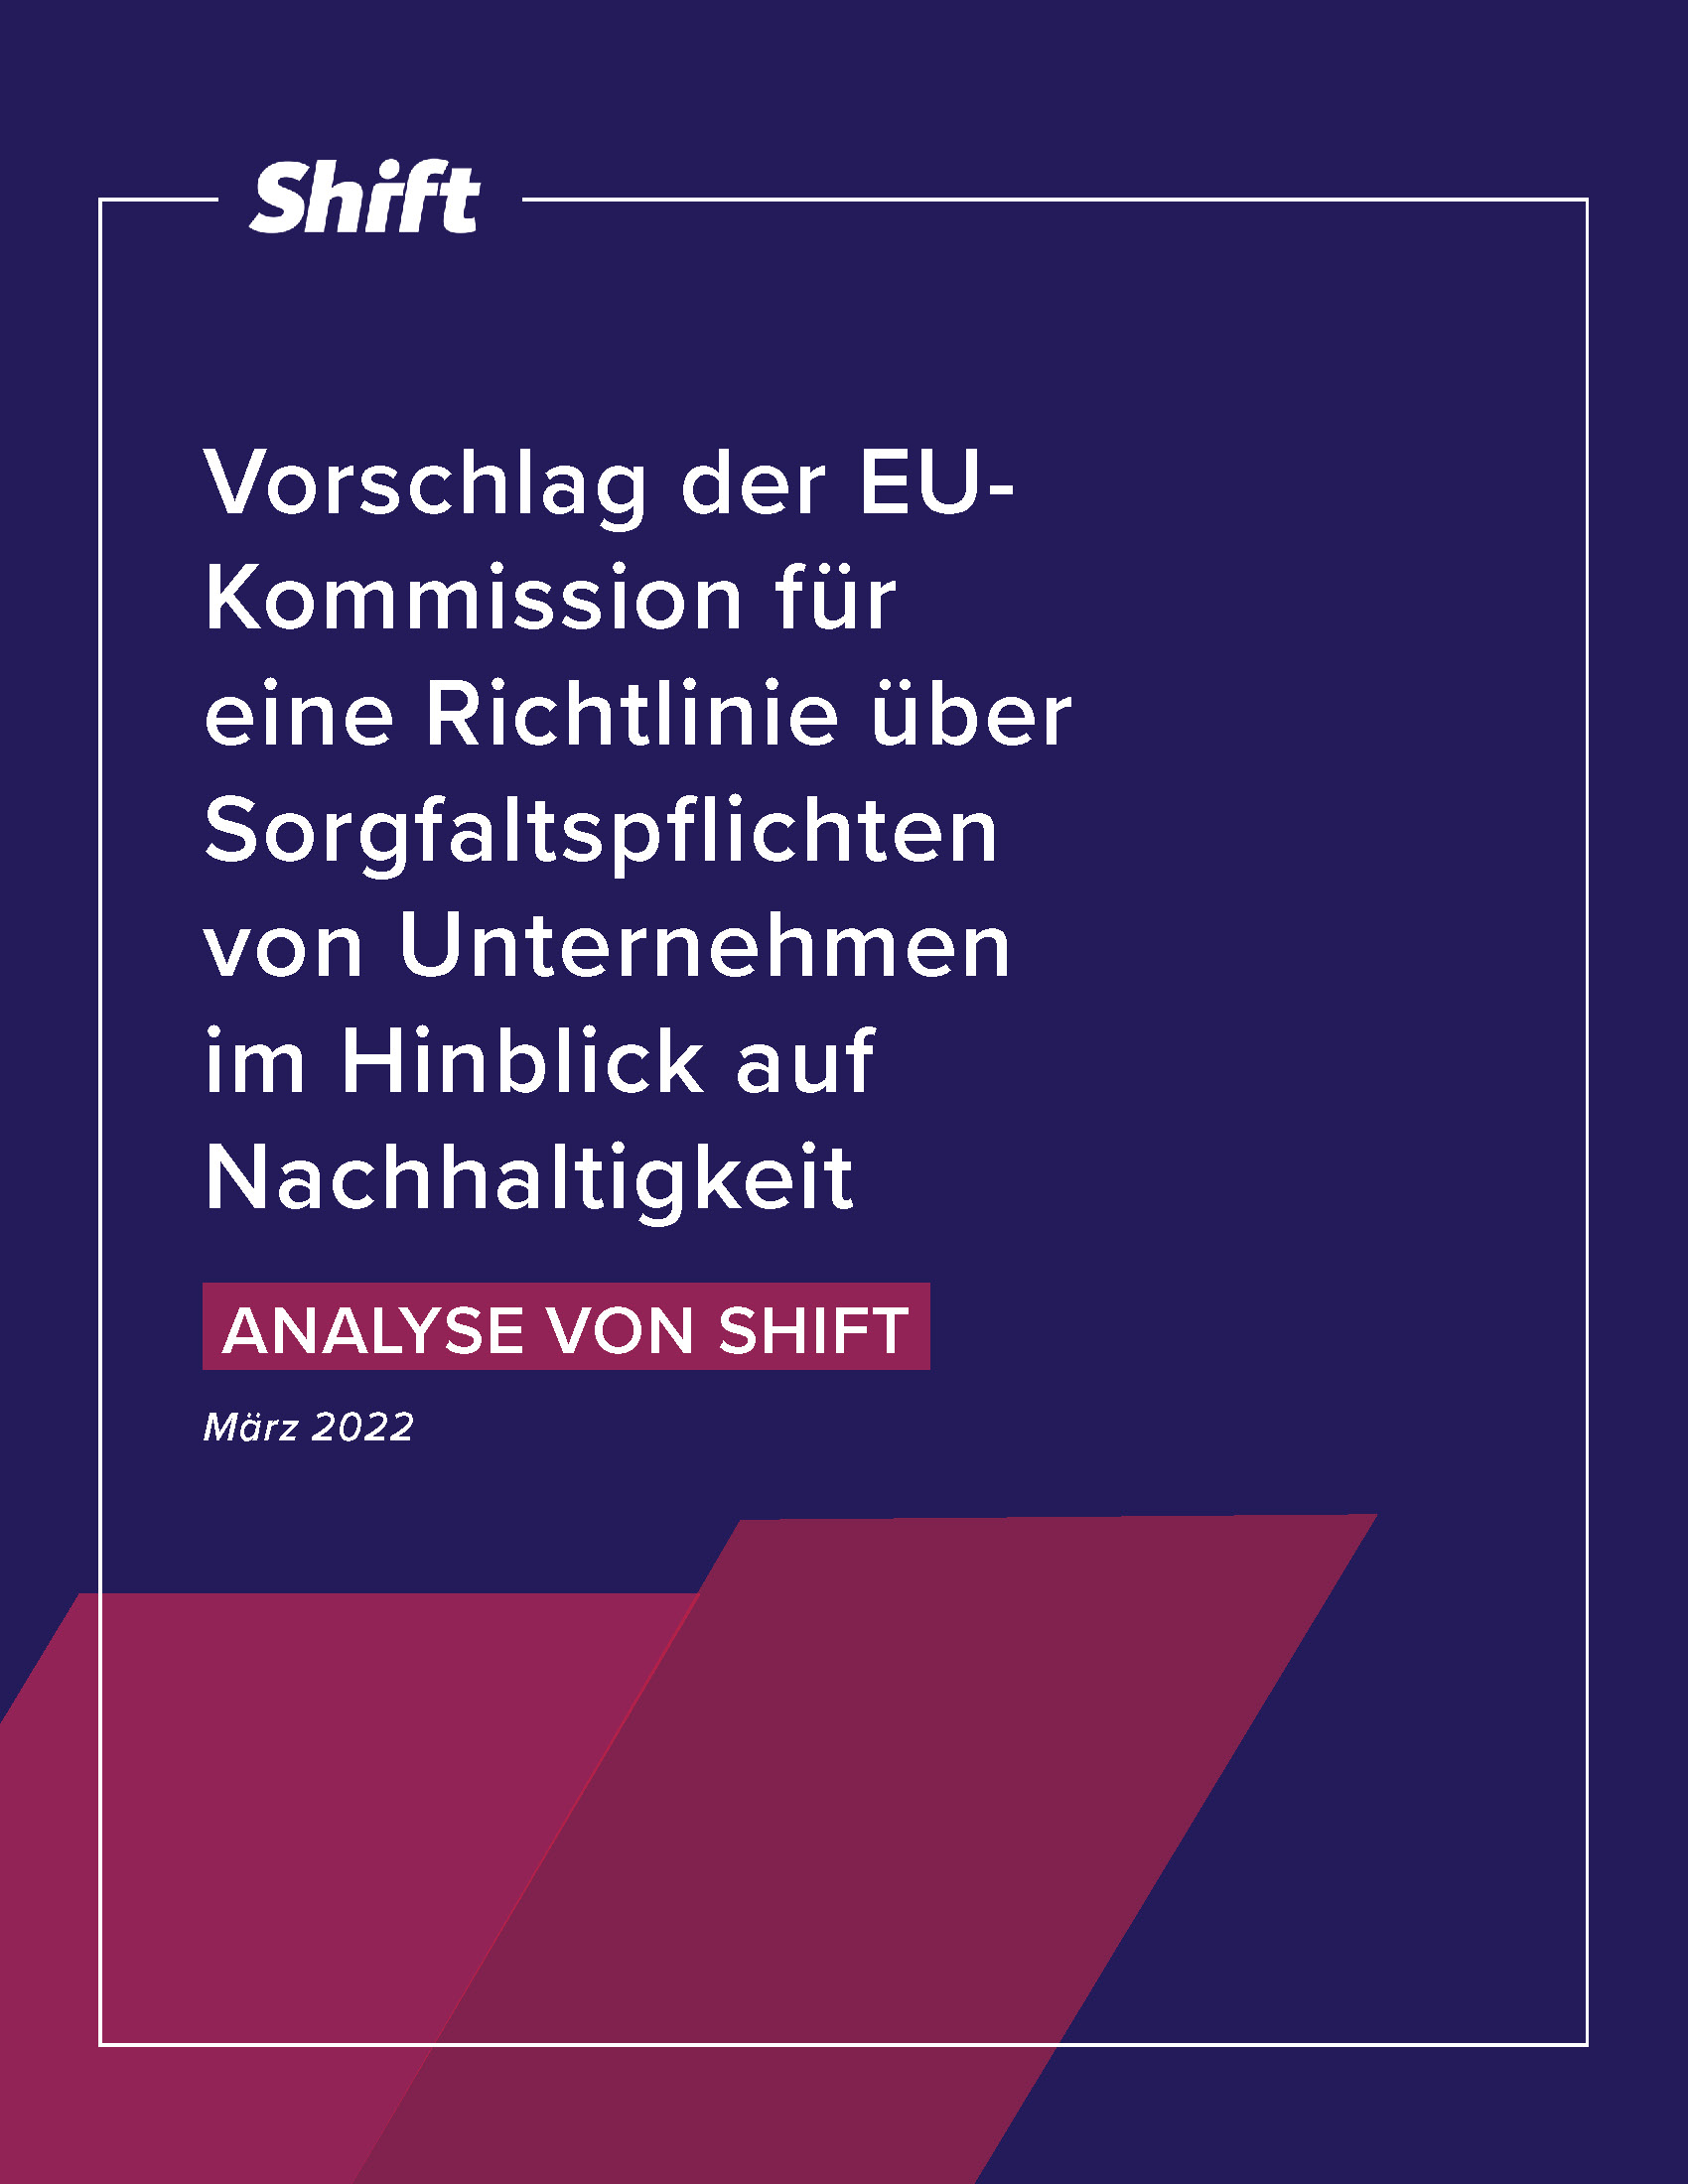 Vorschlag der EU-Kommission für eine Richtlinie über Sorgfaltspflichten von Unternehmen im Hinblick auf Nachhaltigkeit,  Analyse von Shift